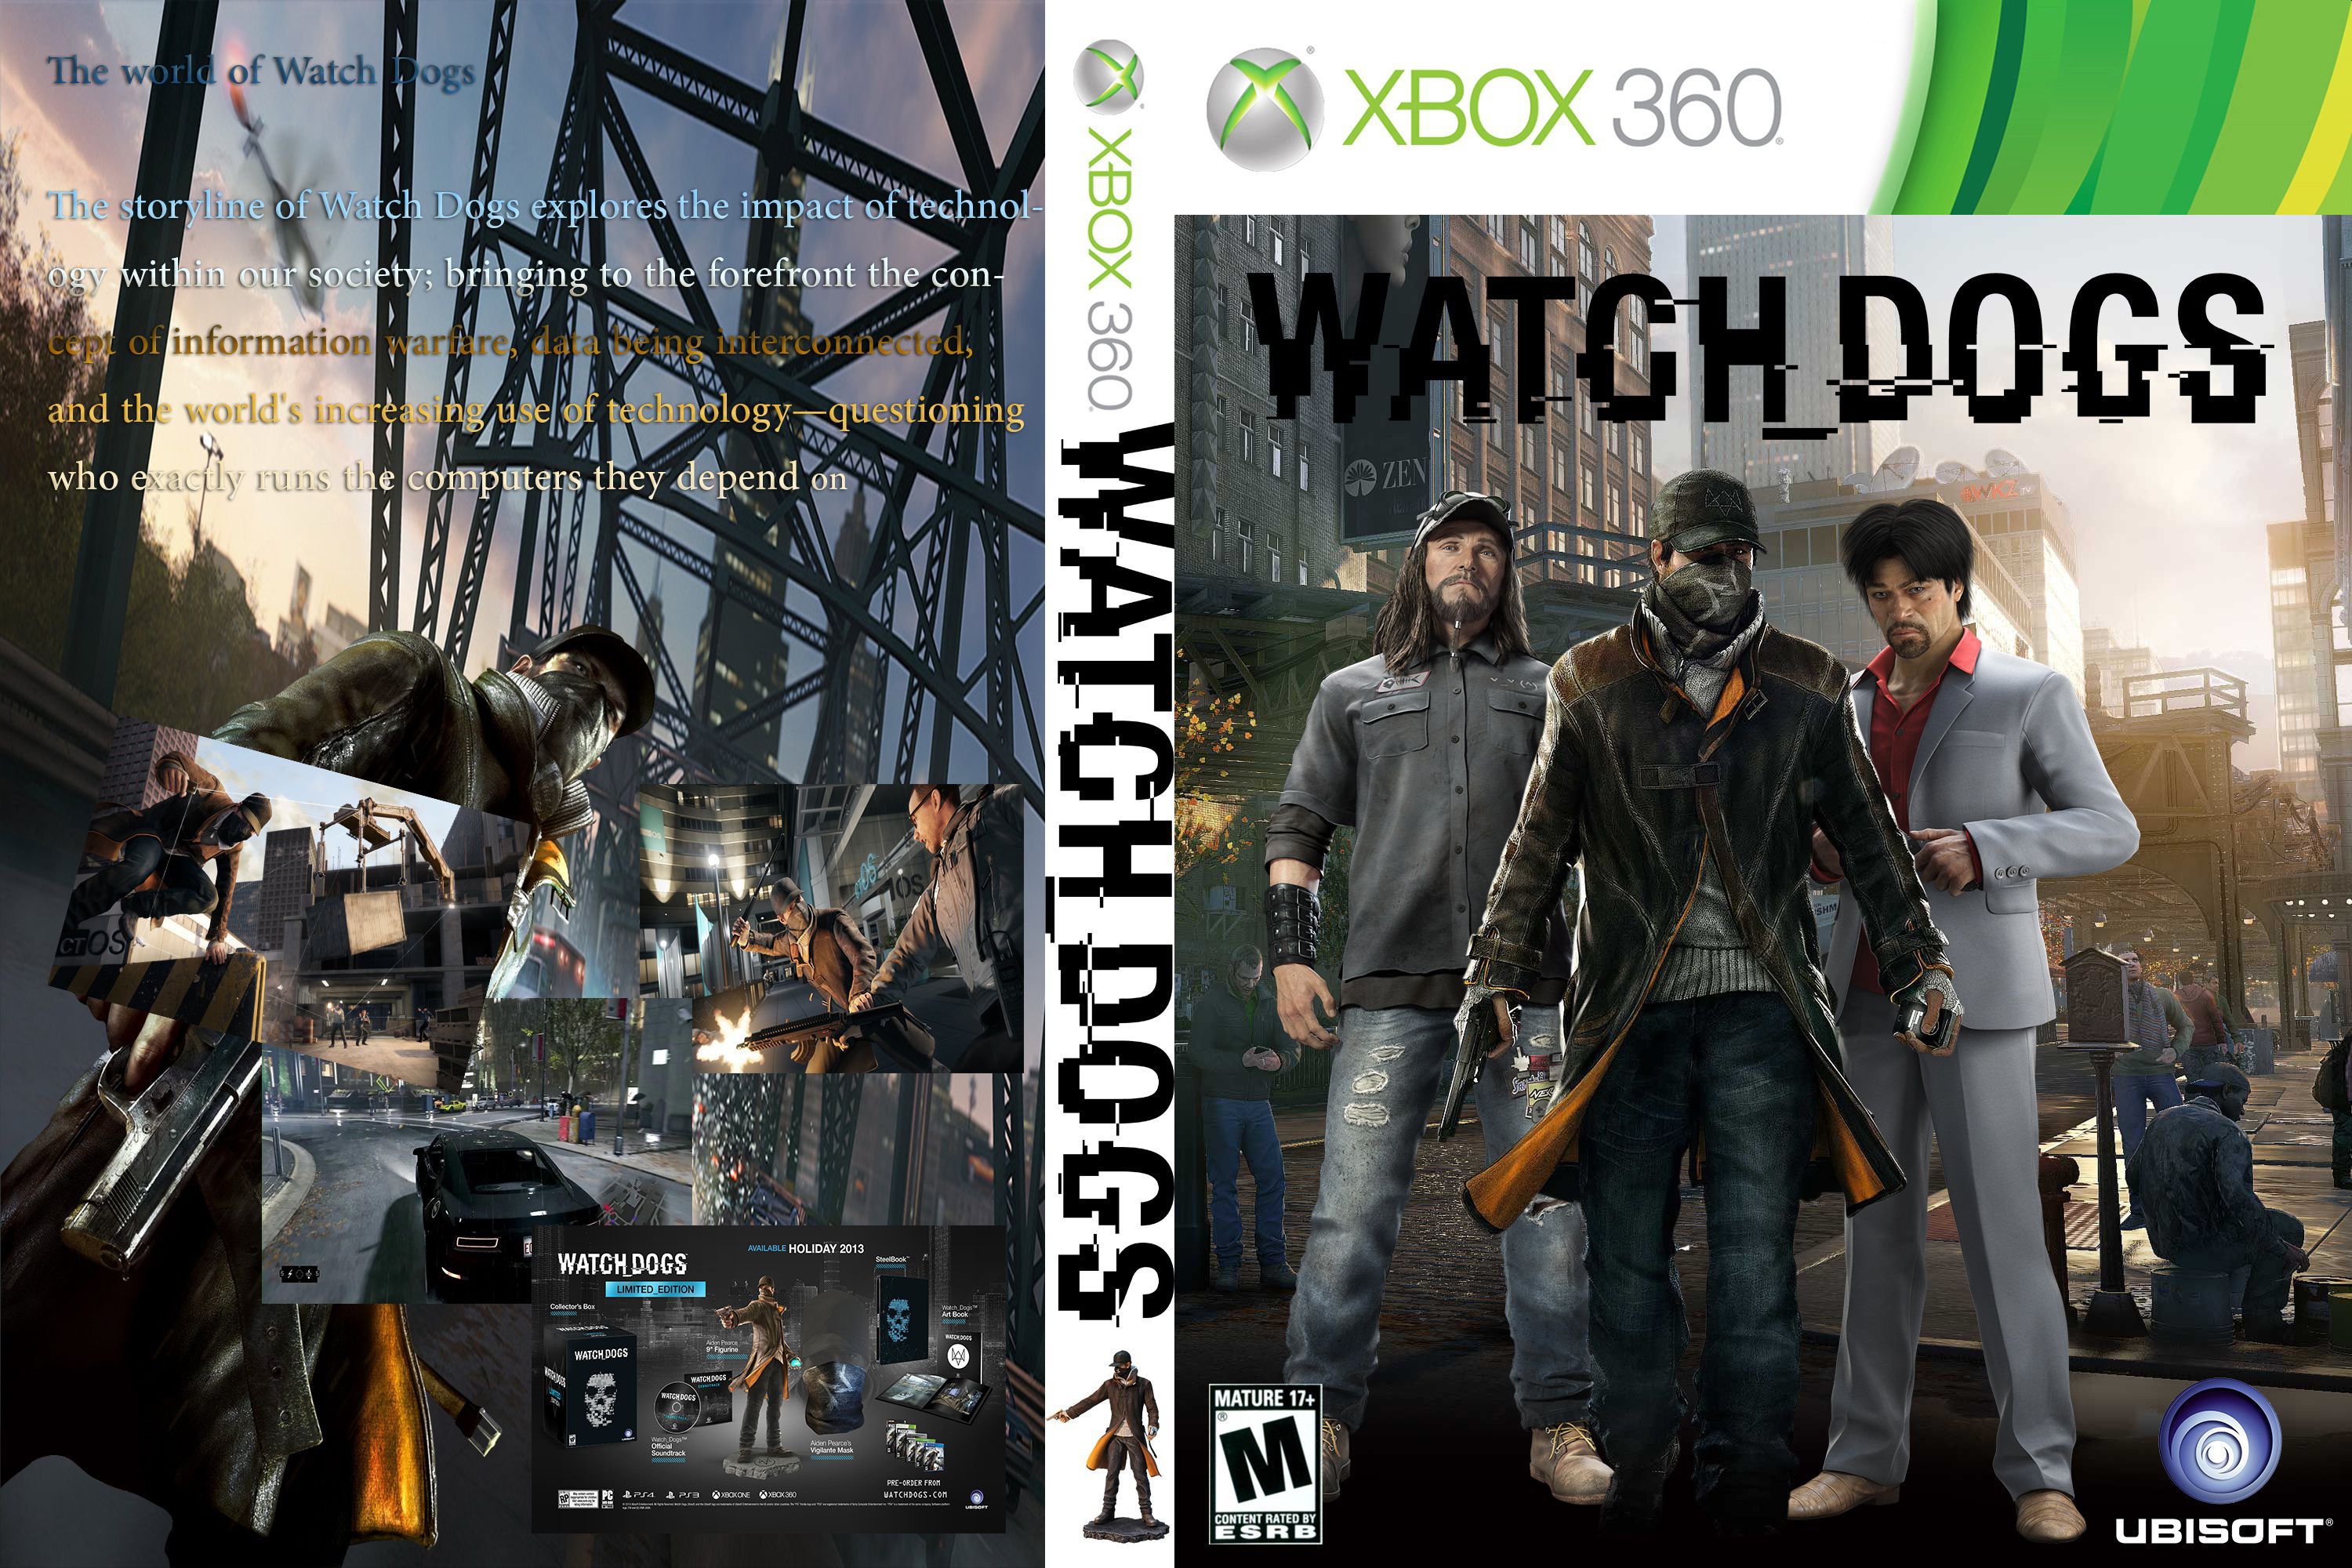 Игры на xbox с открытым миром. Watch Dogs Xbox 360. Вотч догс на Xbox 360. Watch Dogs хбокс 360. Вотч догс 1 Xbox 360.